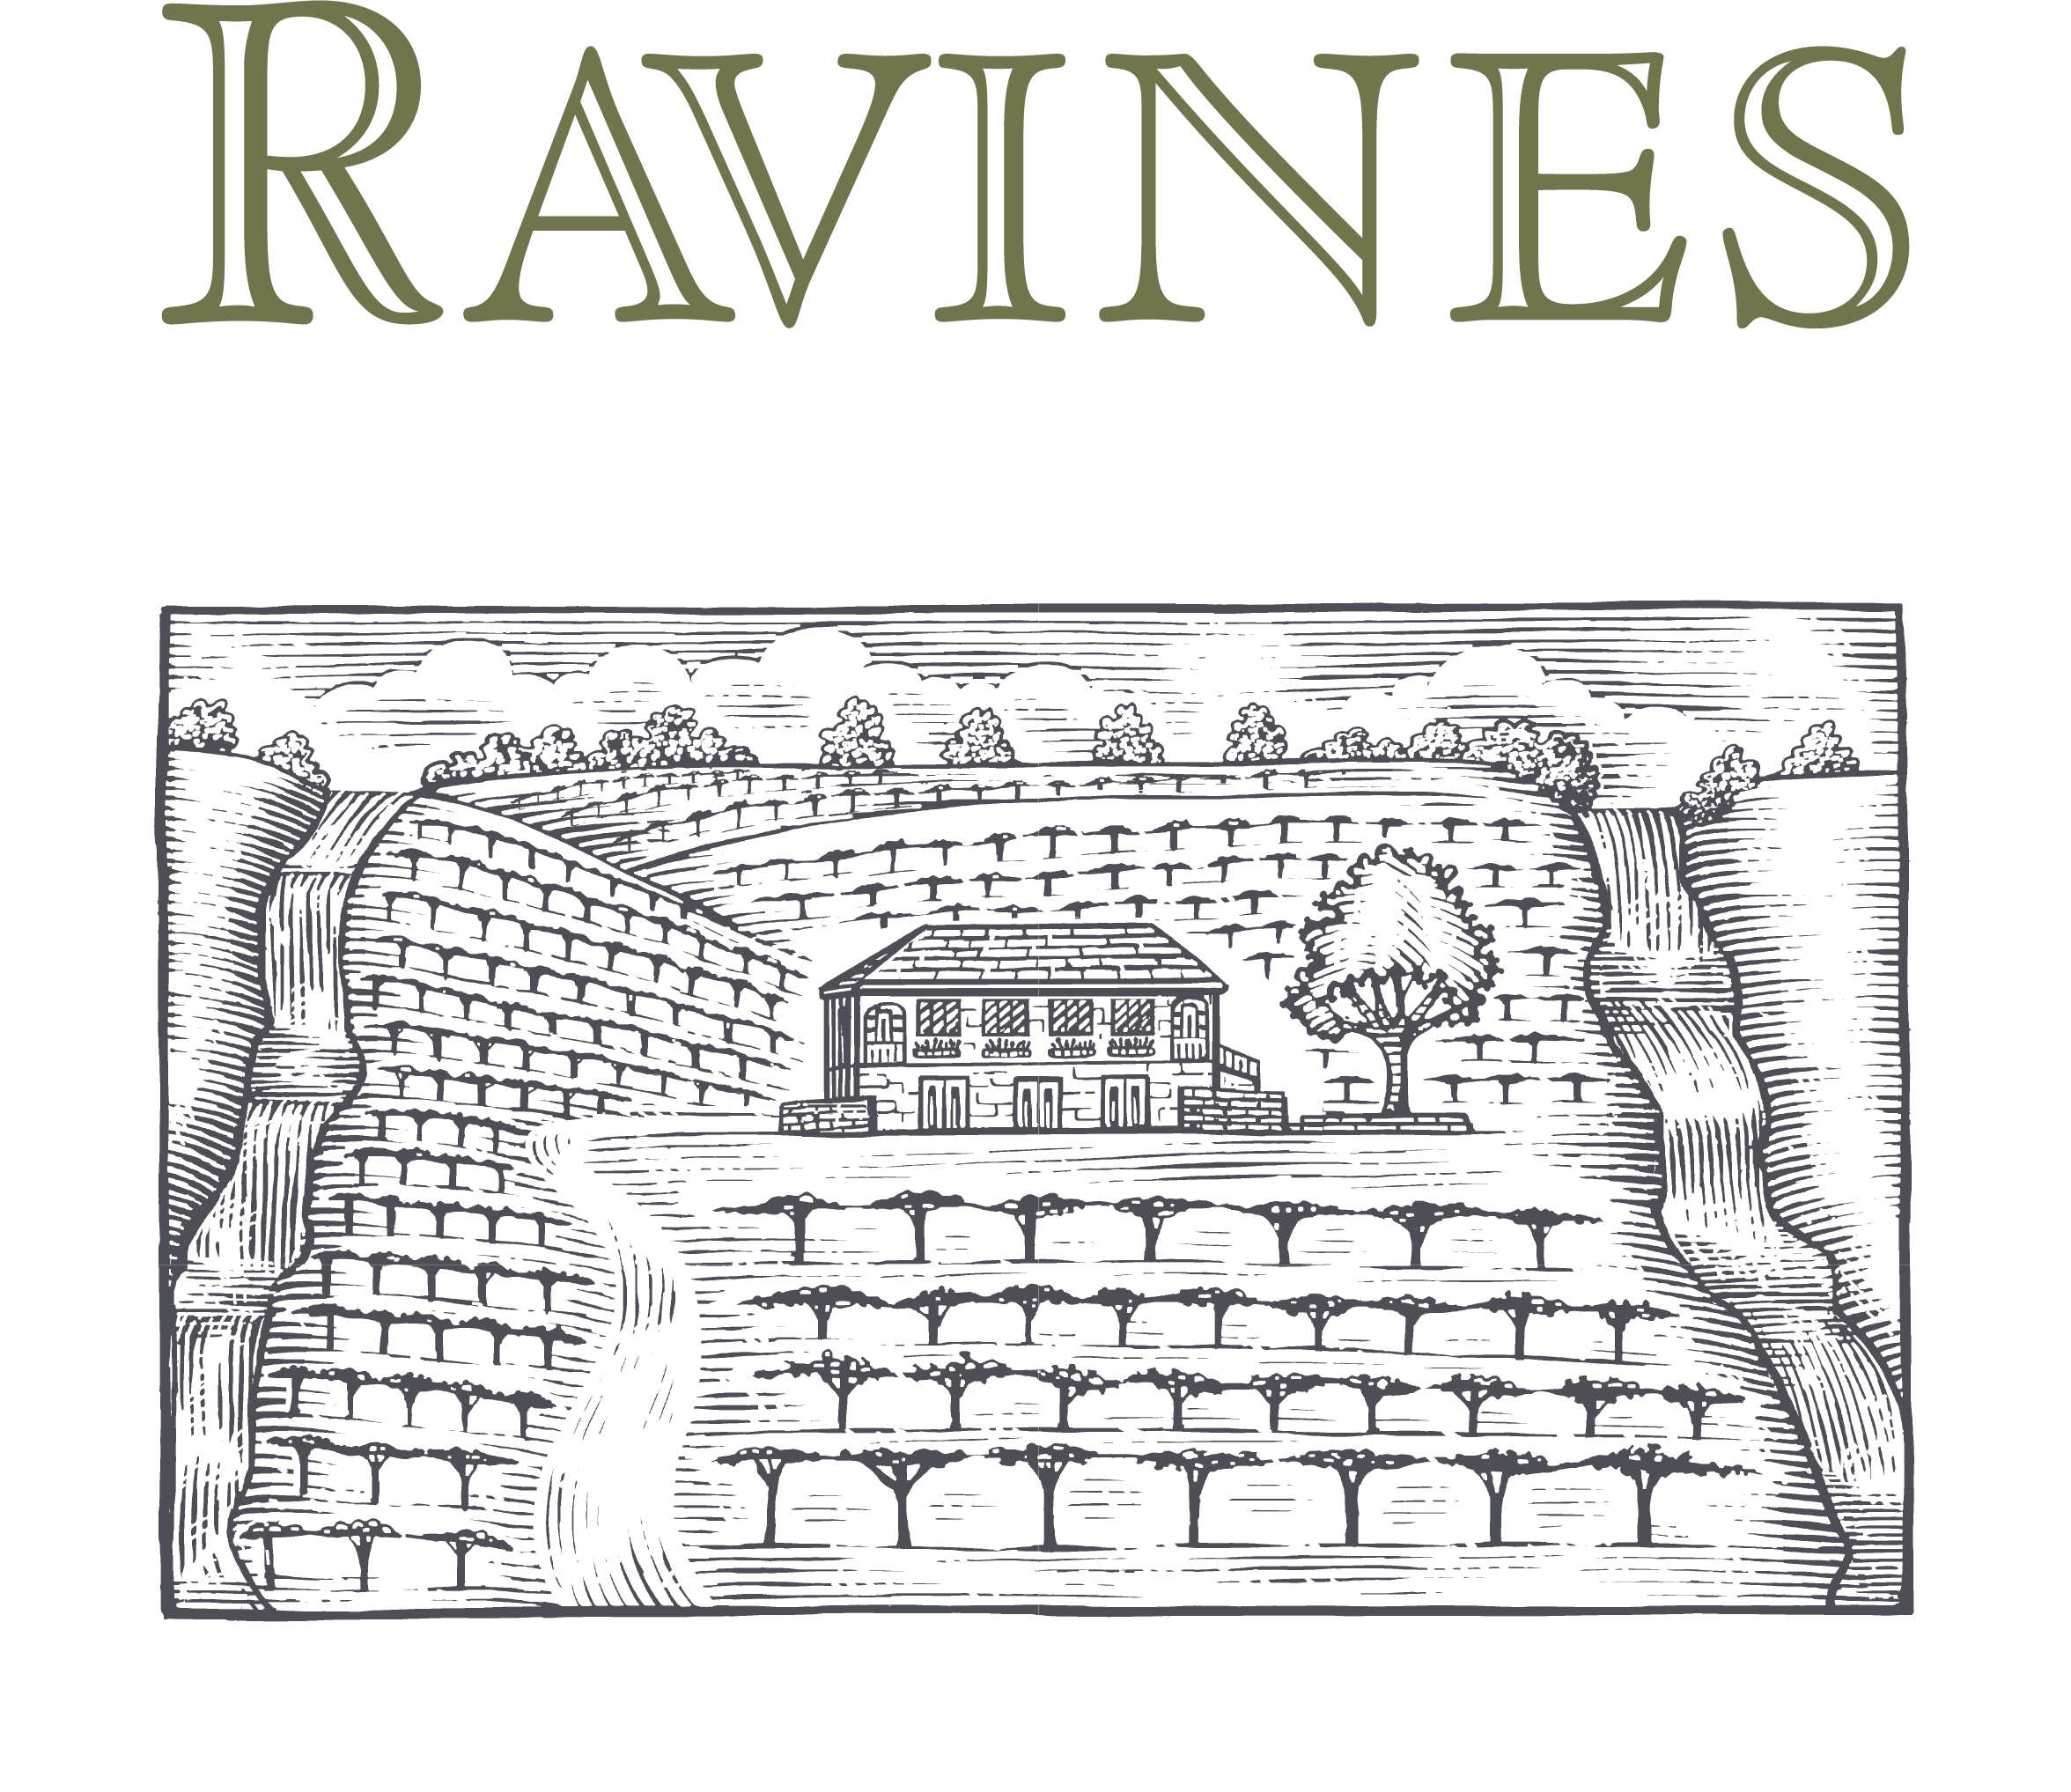 Ravines